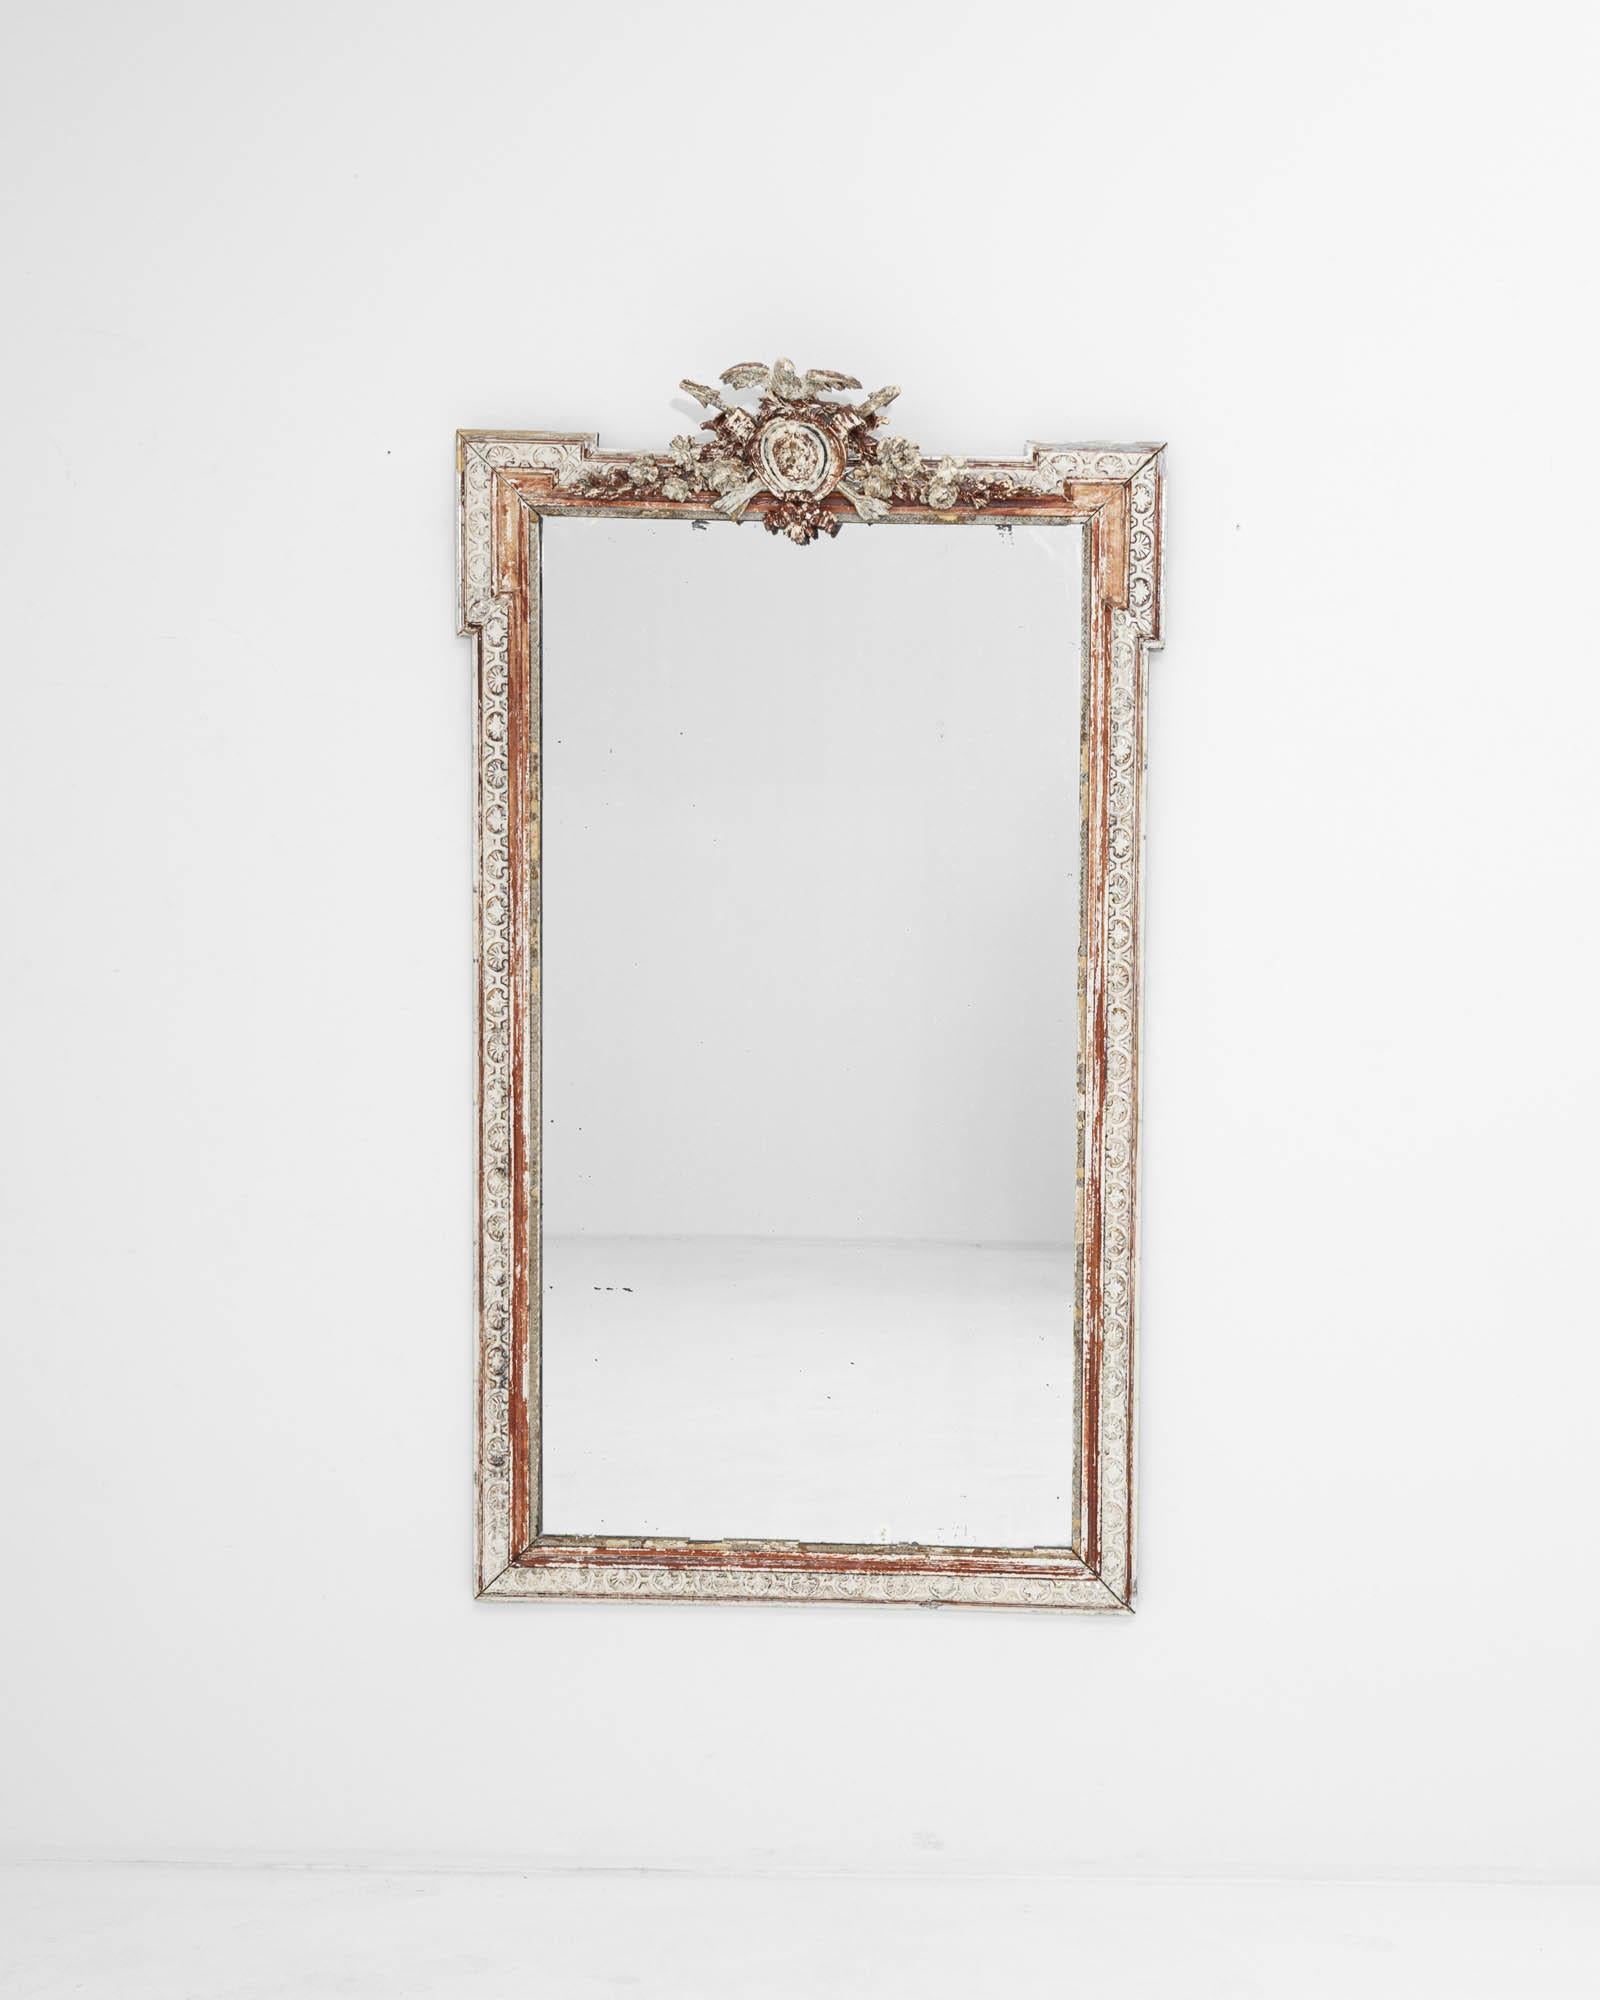 Fabriqué à la main au 19e siècle, ce magnifique miroir est doté d'un superbe cadre à la patine blanche vieillie qui met délicatement en valeur les magnifiques détails sculptés, faisant scintiller la teinte rose du bois comme de l'or. L'ornementation